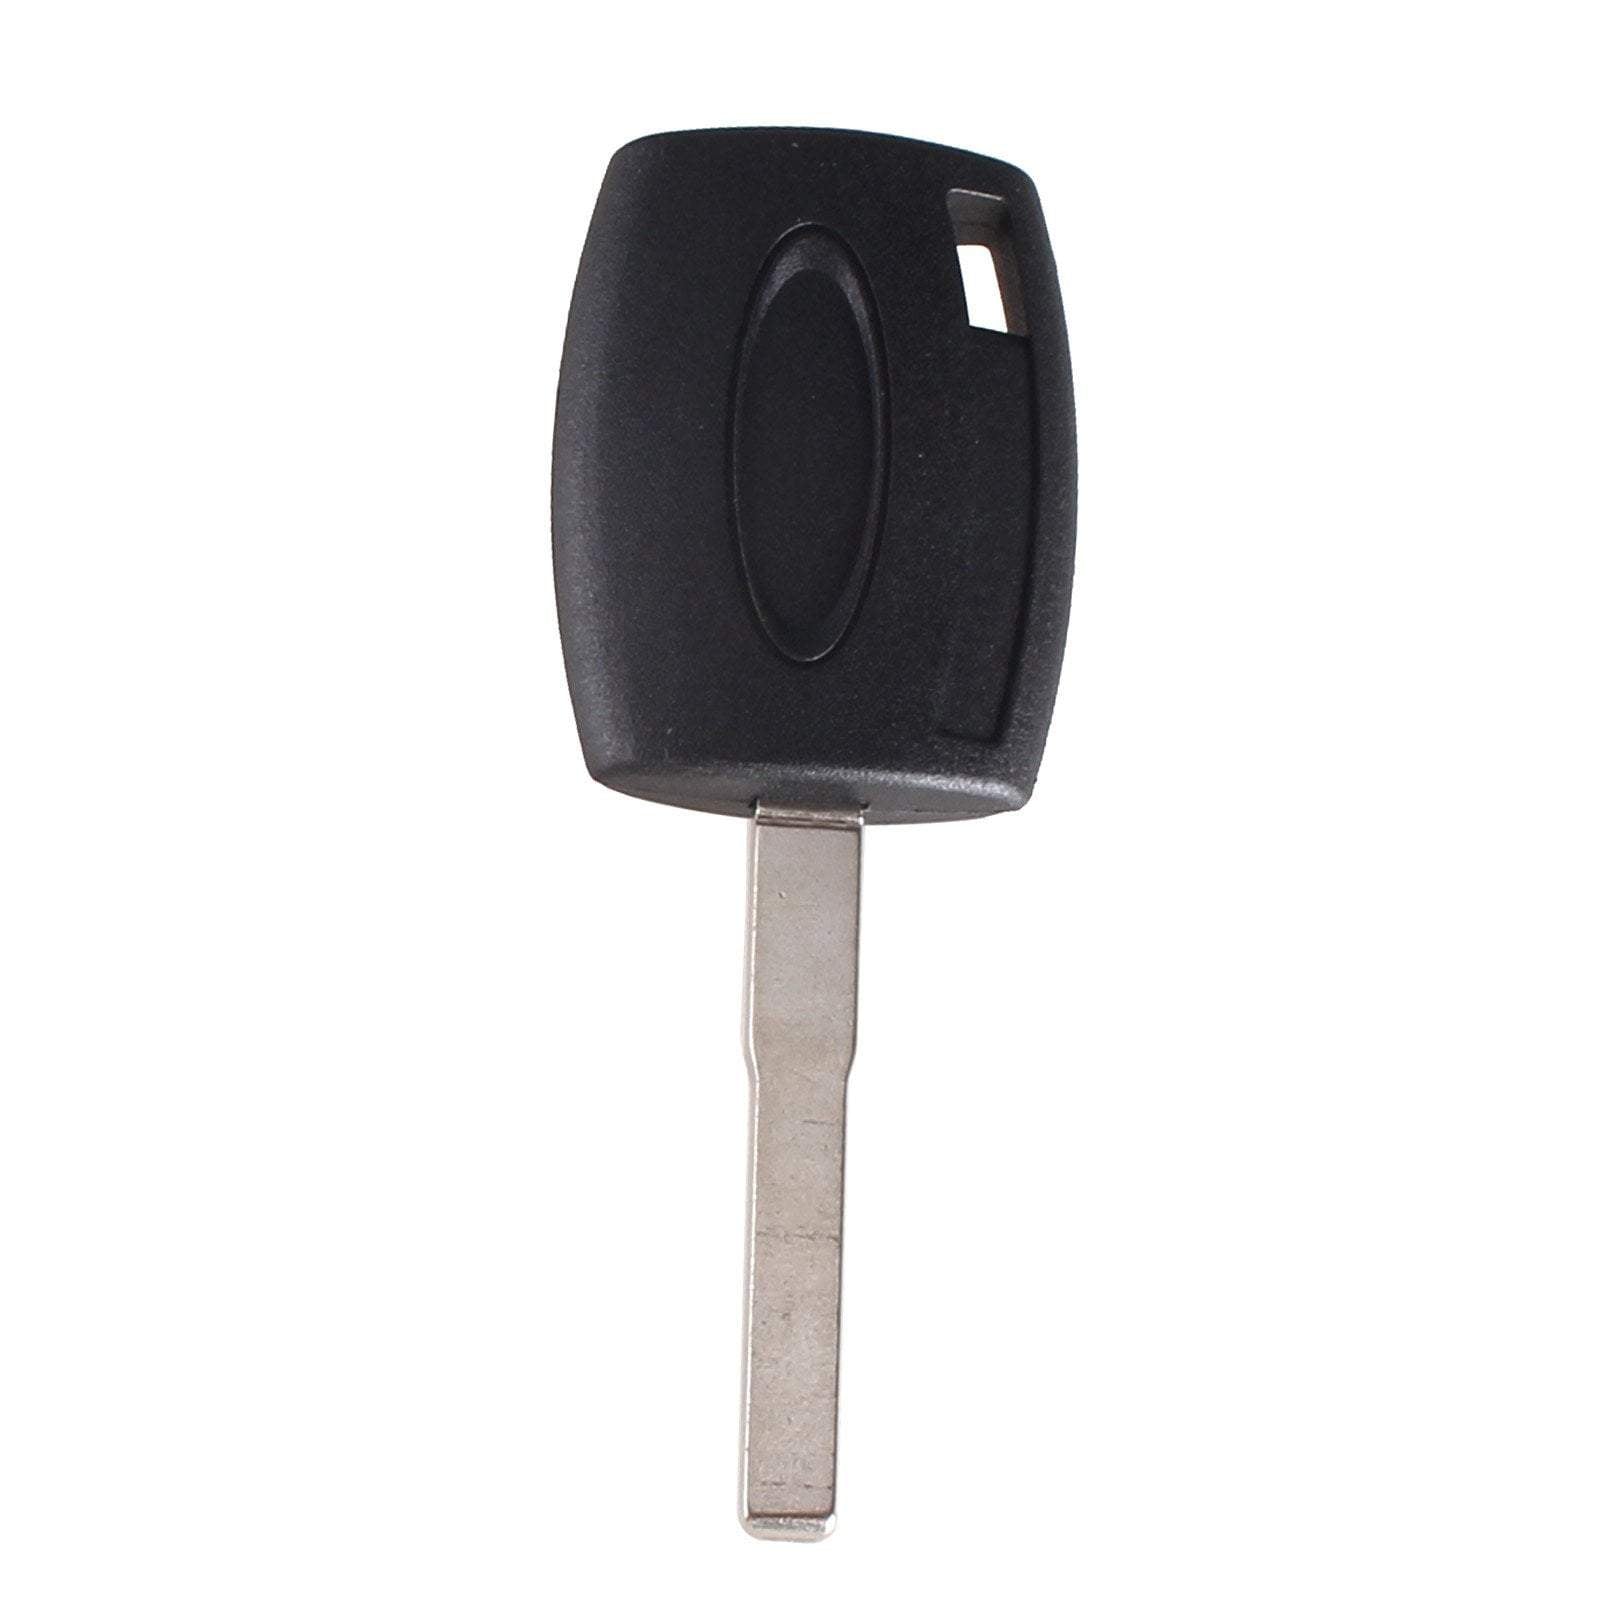 Fekete színű, gomb nélküli Ford kulcs, kulcsház. Nyers HU101 kulcsszárral.